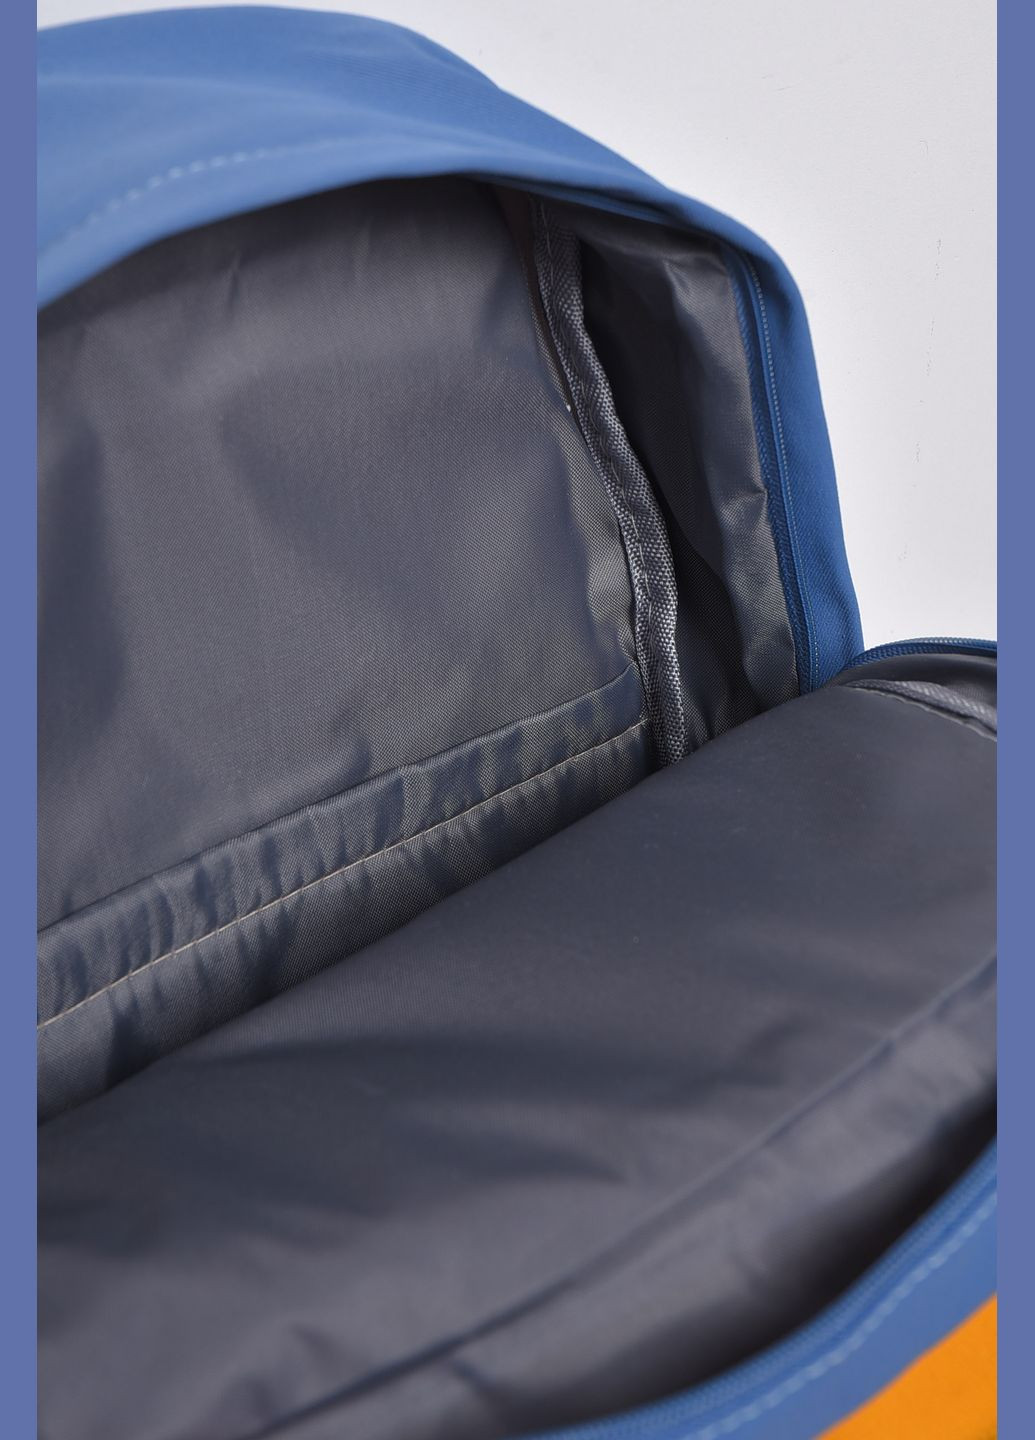 Рюкзак женский текстильный синего цвета Let's Shop (280938070)